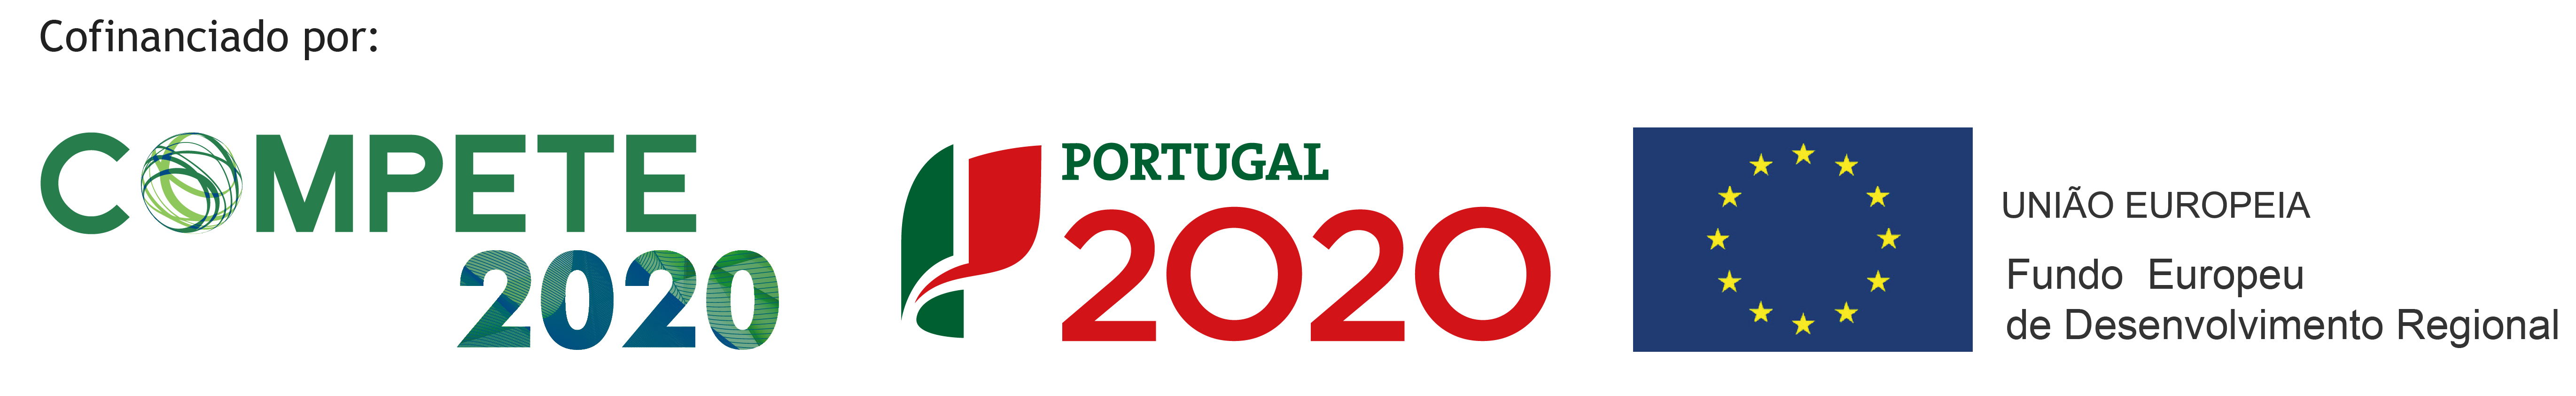 Compete 2020